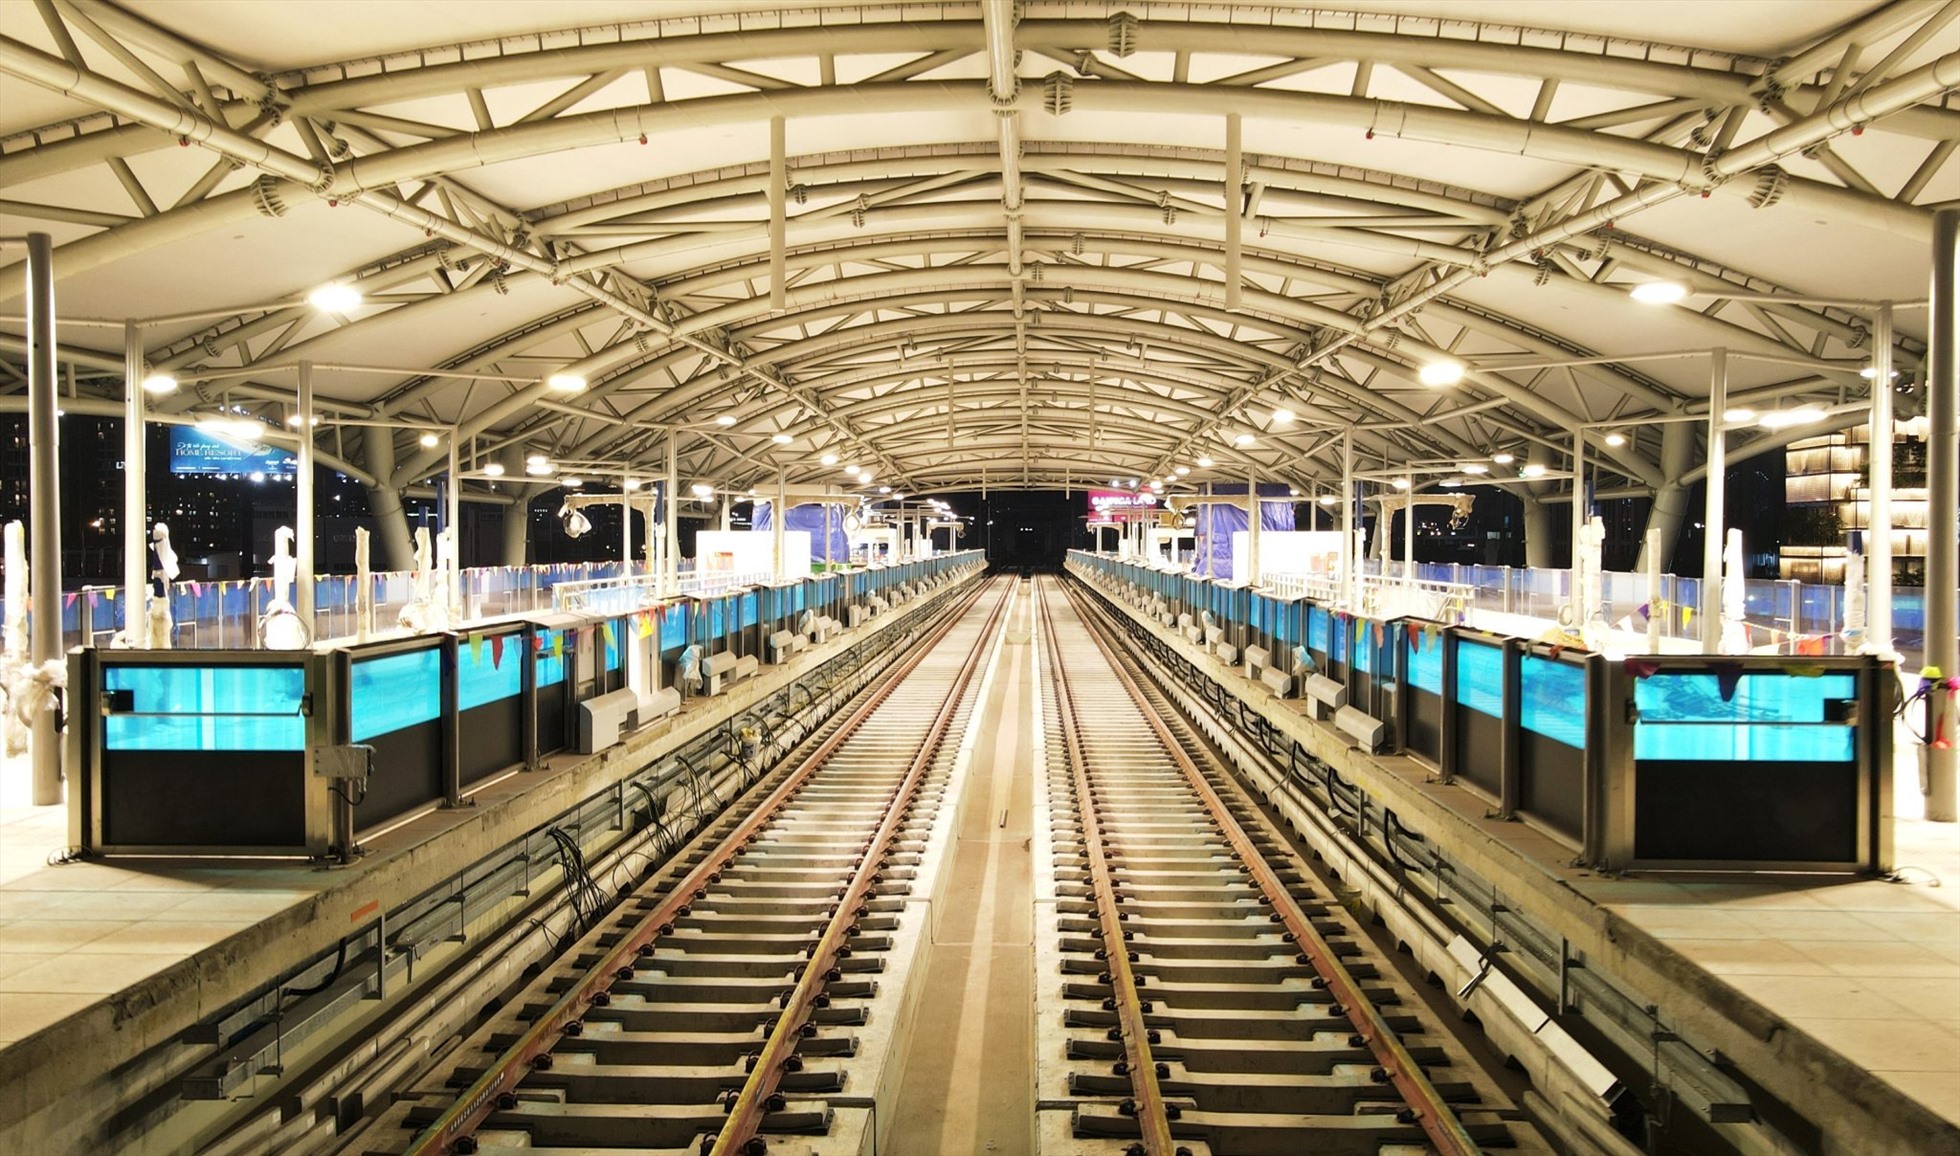 Bên trong tầng trên cùng của ga Tân Cảng với hệ thống mái lợp kín thay vì hở ở giữa như những ga trên cao khác.